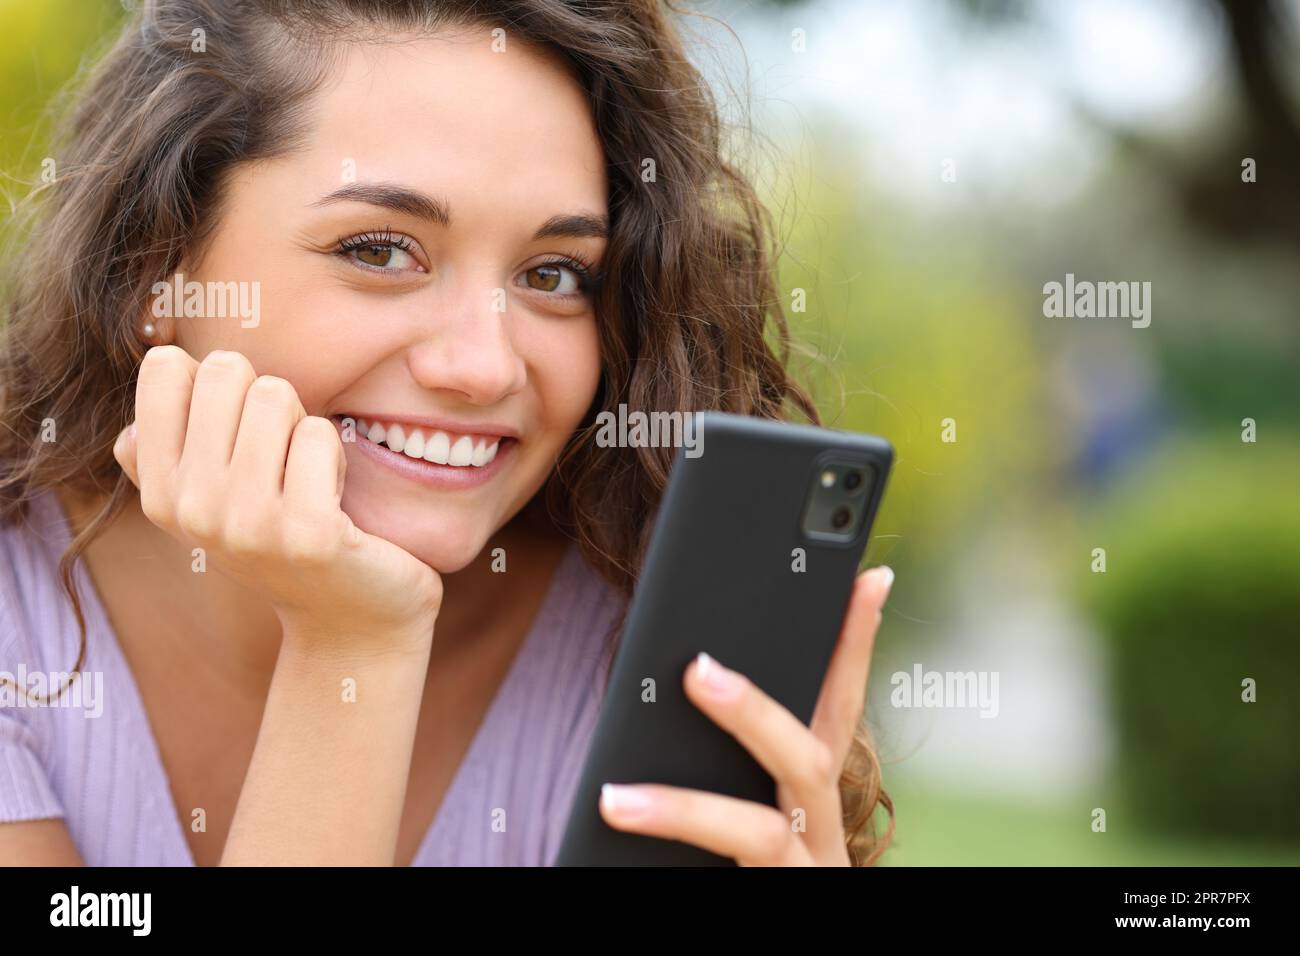 Une femme heureuse tenant un téléphone portable vous regarde Banque D'Images